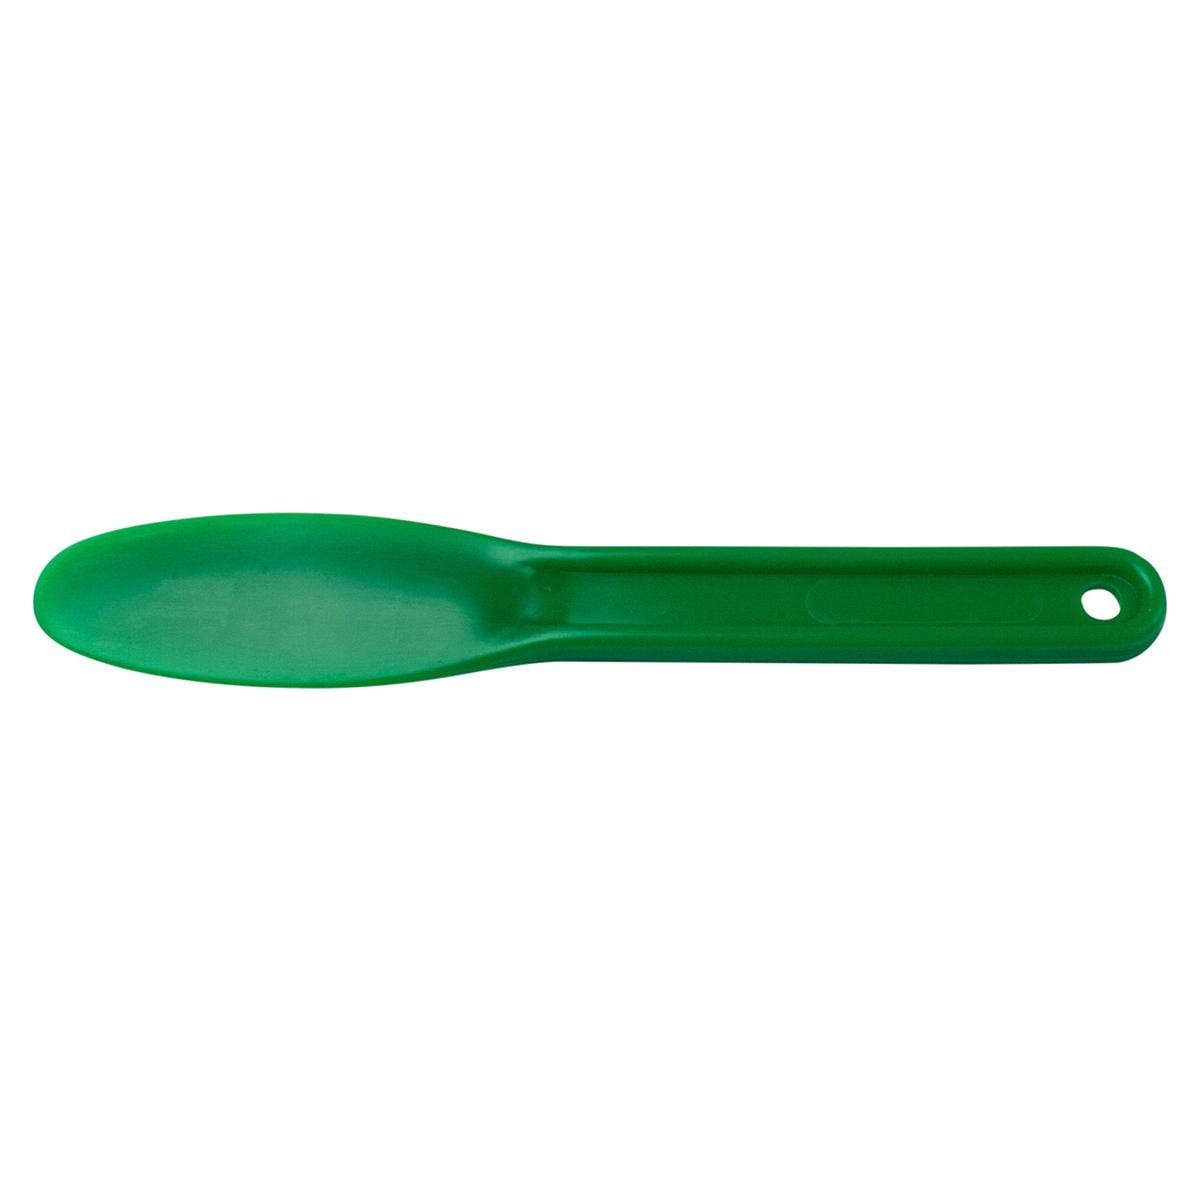 Alginaatspatel plastic - Groen